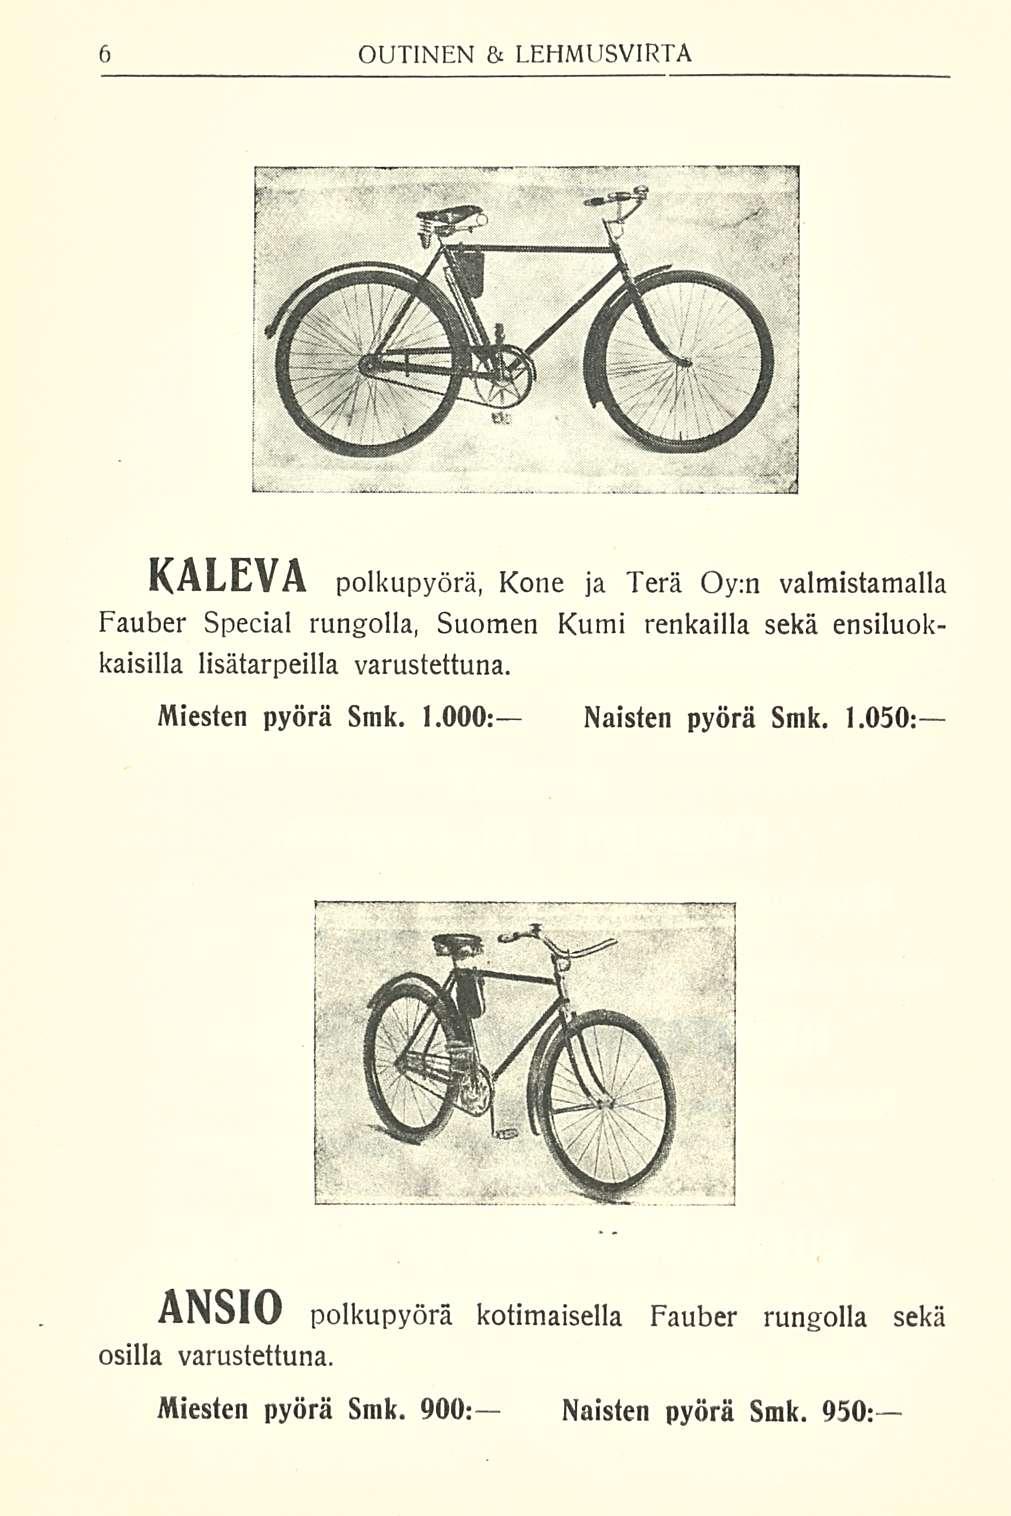 KALEVA polkupyörä, Kone ja Terä Oy;n valmistamalla Fauber Special rungolla, Suomen Kumi renkailla sekä ensiluokkaisilla lisätarpeilla varustettuna.